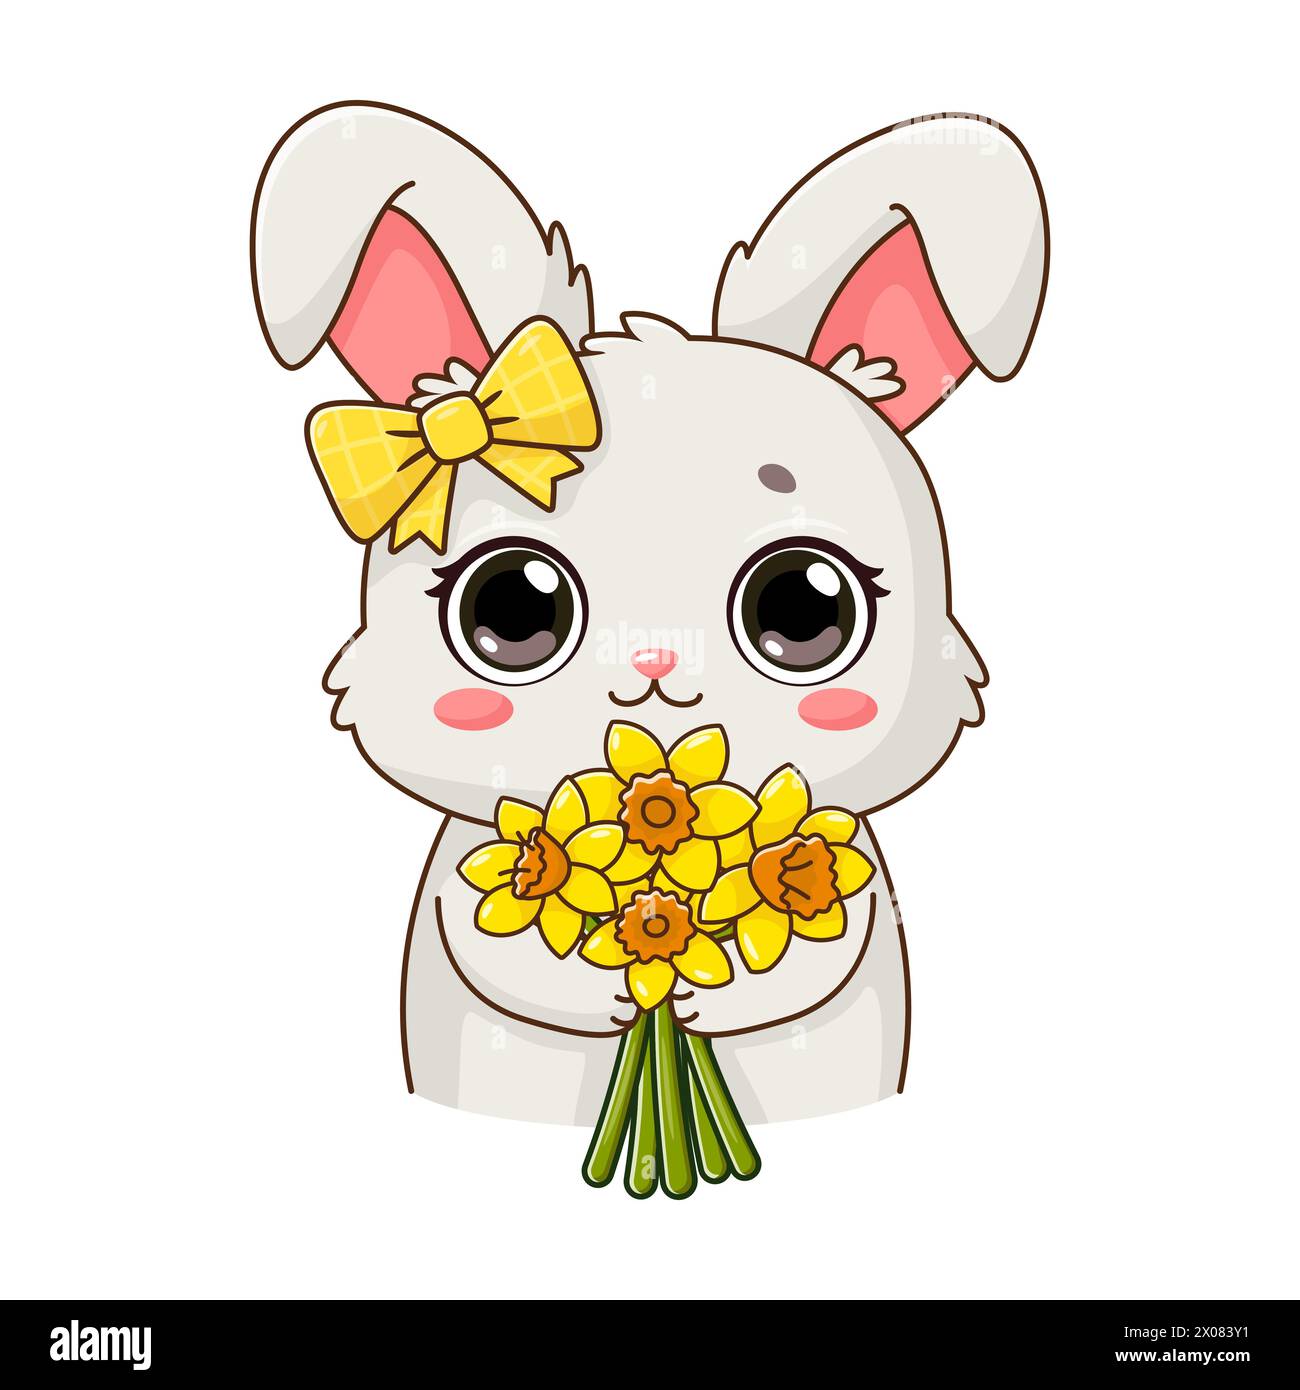 Adesivo con simpatico coniglio che regge il bouquet di narciso. Adorabile personaggio sorridente in stile cartoni animati. Estate, fiori primaverili. Illustrazione vettoriale isolata Illustrazione Vettoriale